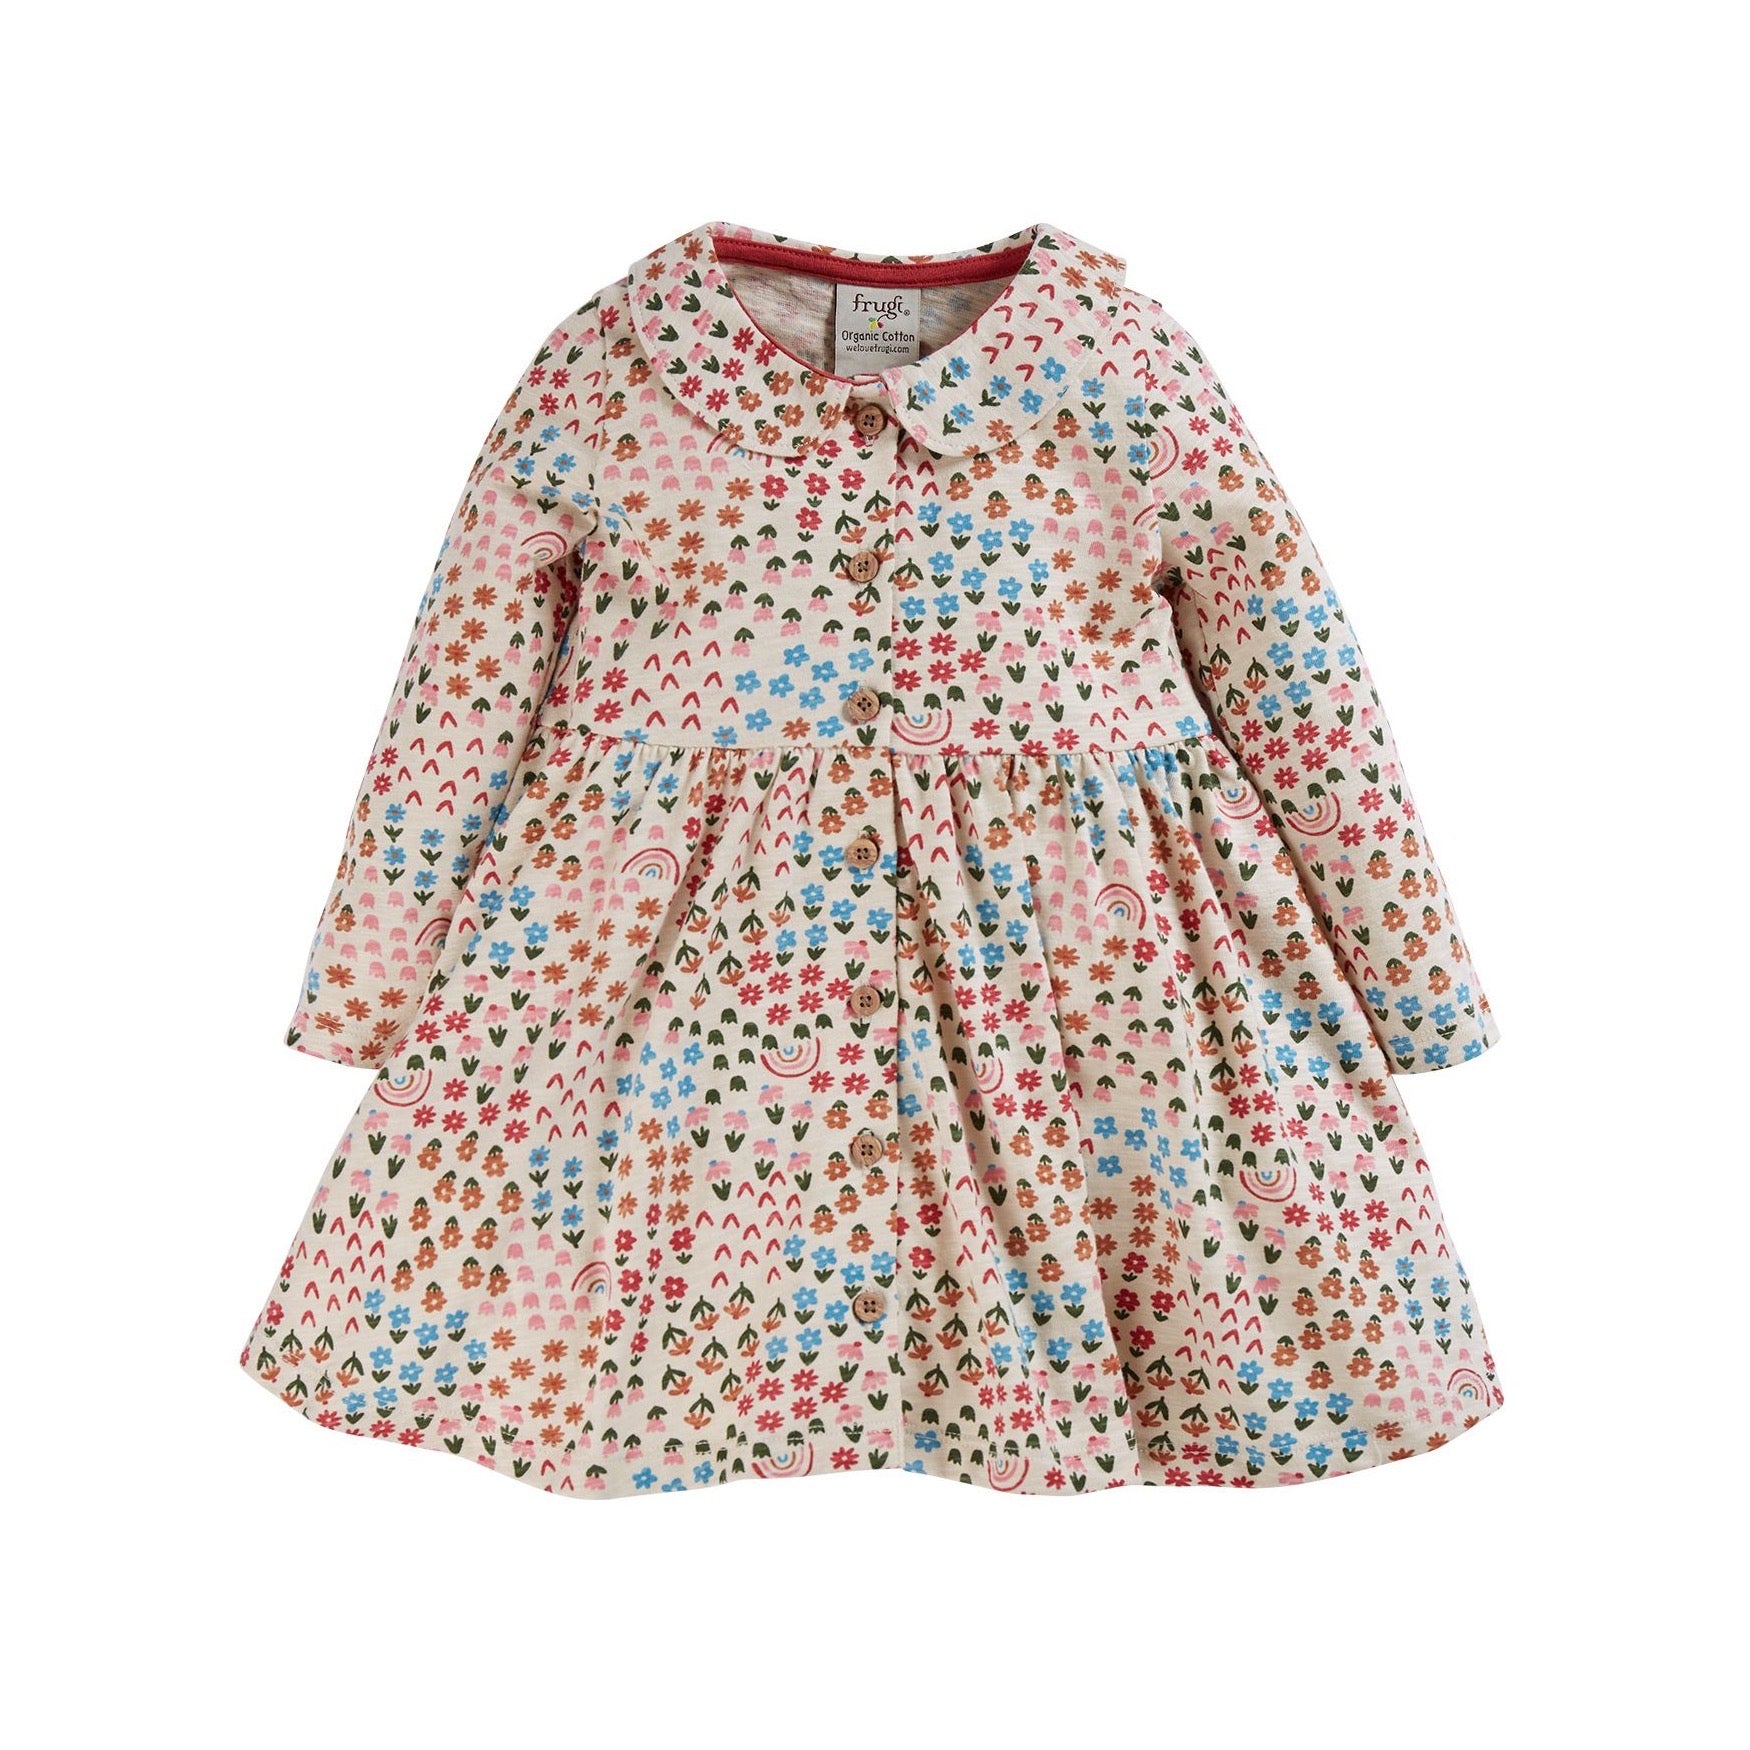 Frugi Infant Marta Dress Clothing 3-6M / Multi,6-9M / Multi,9-12M / Multi,12-18M / Multi,18-24M / Multi